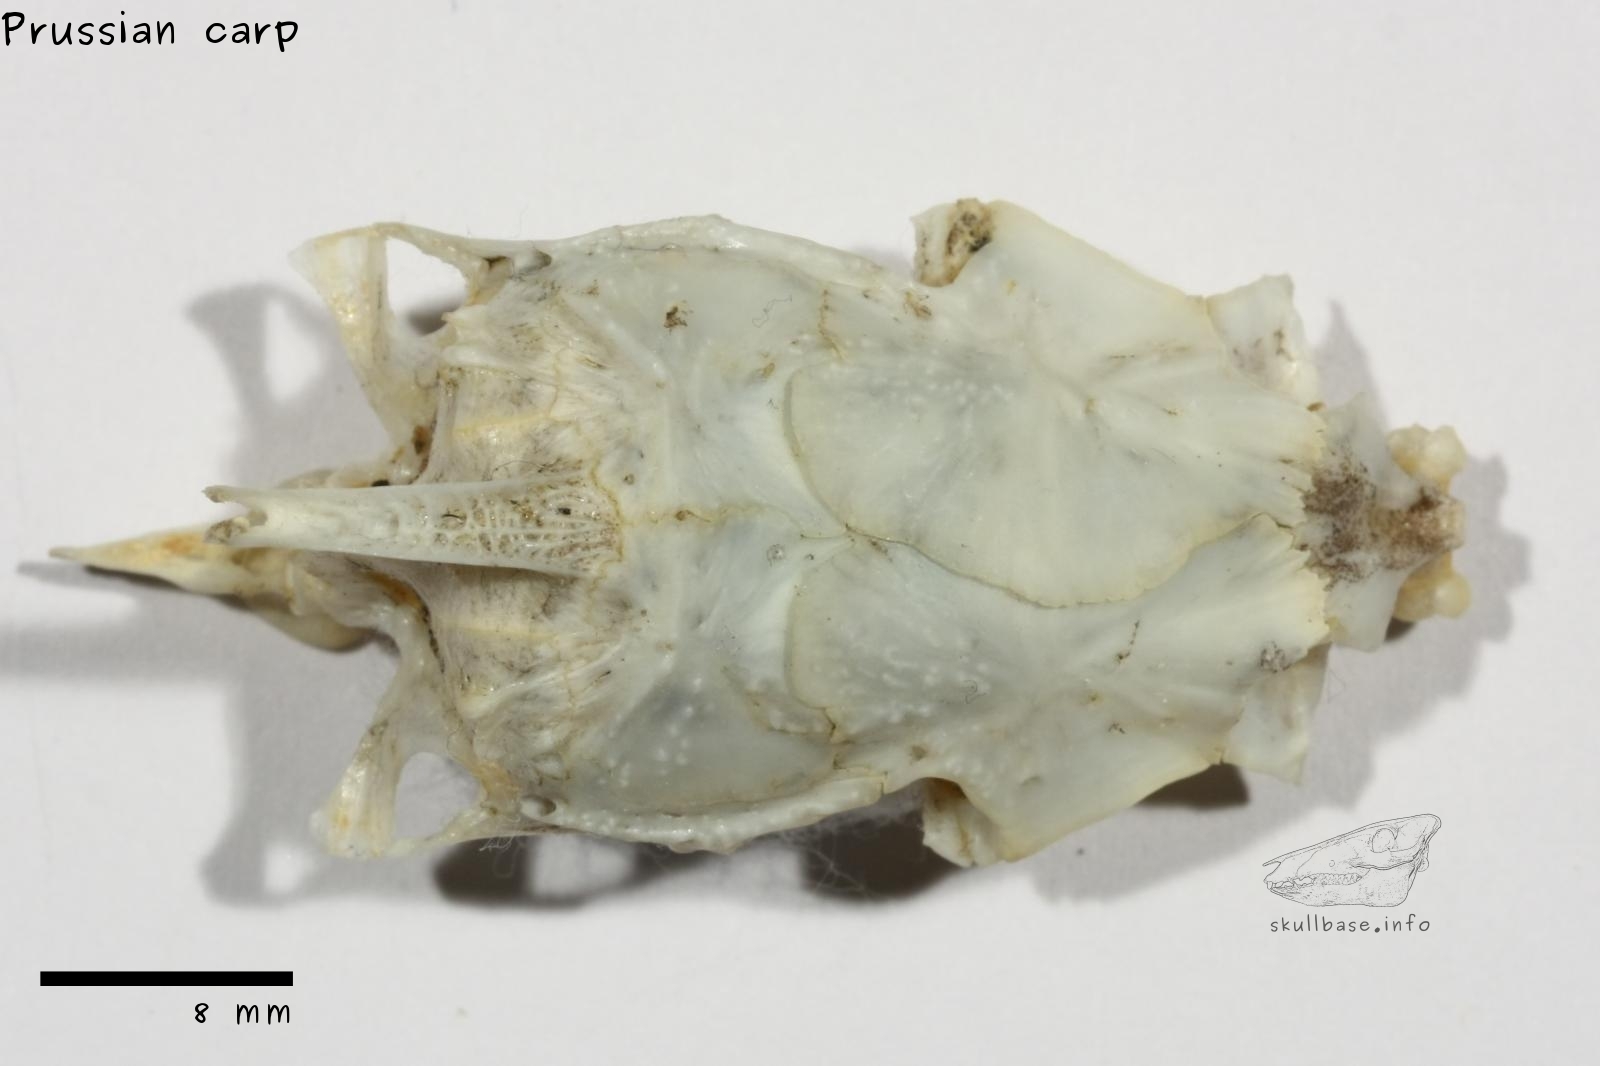 Prussian carp (Carassius gibelio) neurocranium dorsal view